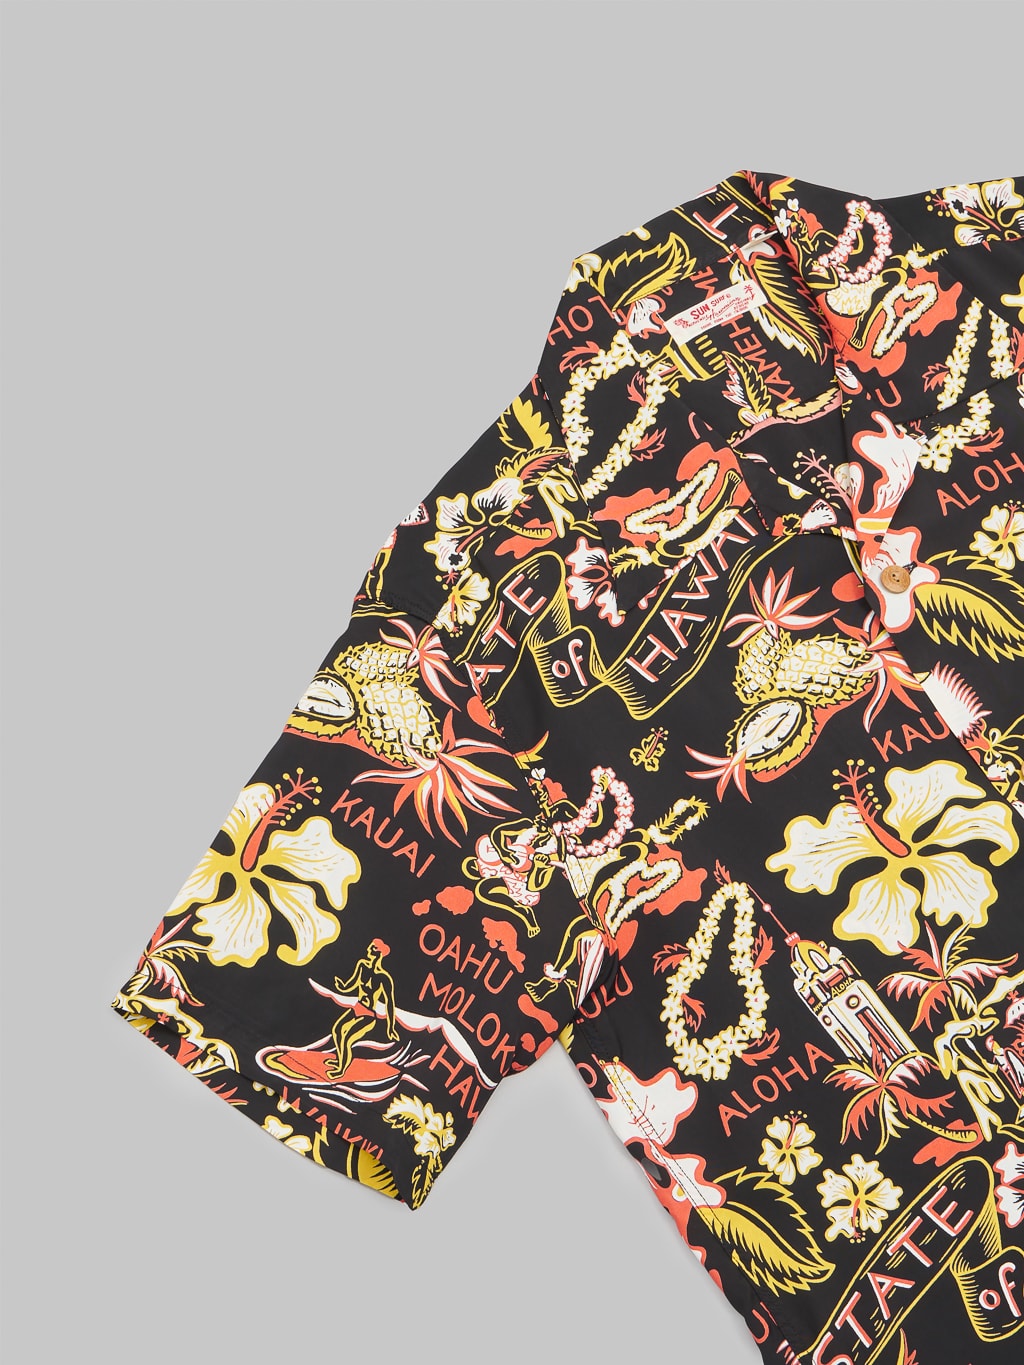 sun surf rayon hawaiian shirt state of hawaiian short sleeve